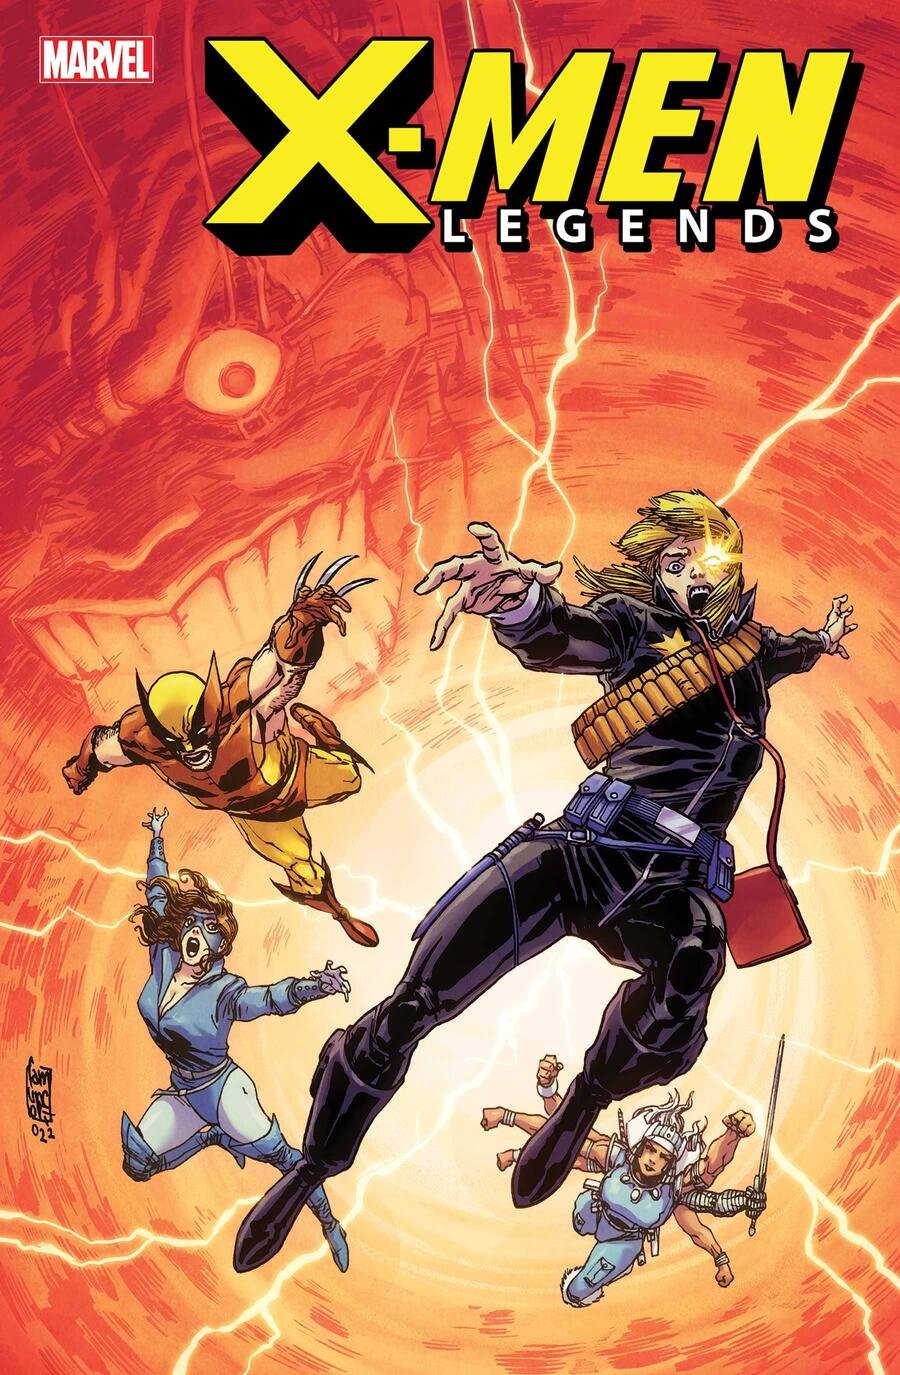 Cover di X-Men Legends 3 di Giuseppe Camuncoli, con il ritorno di Ann Nocenti su Longshot